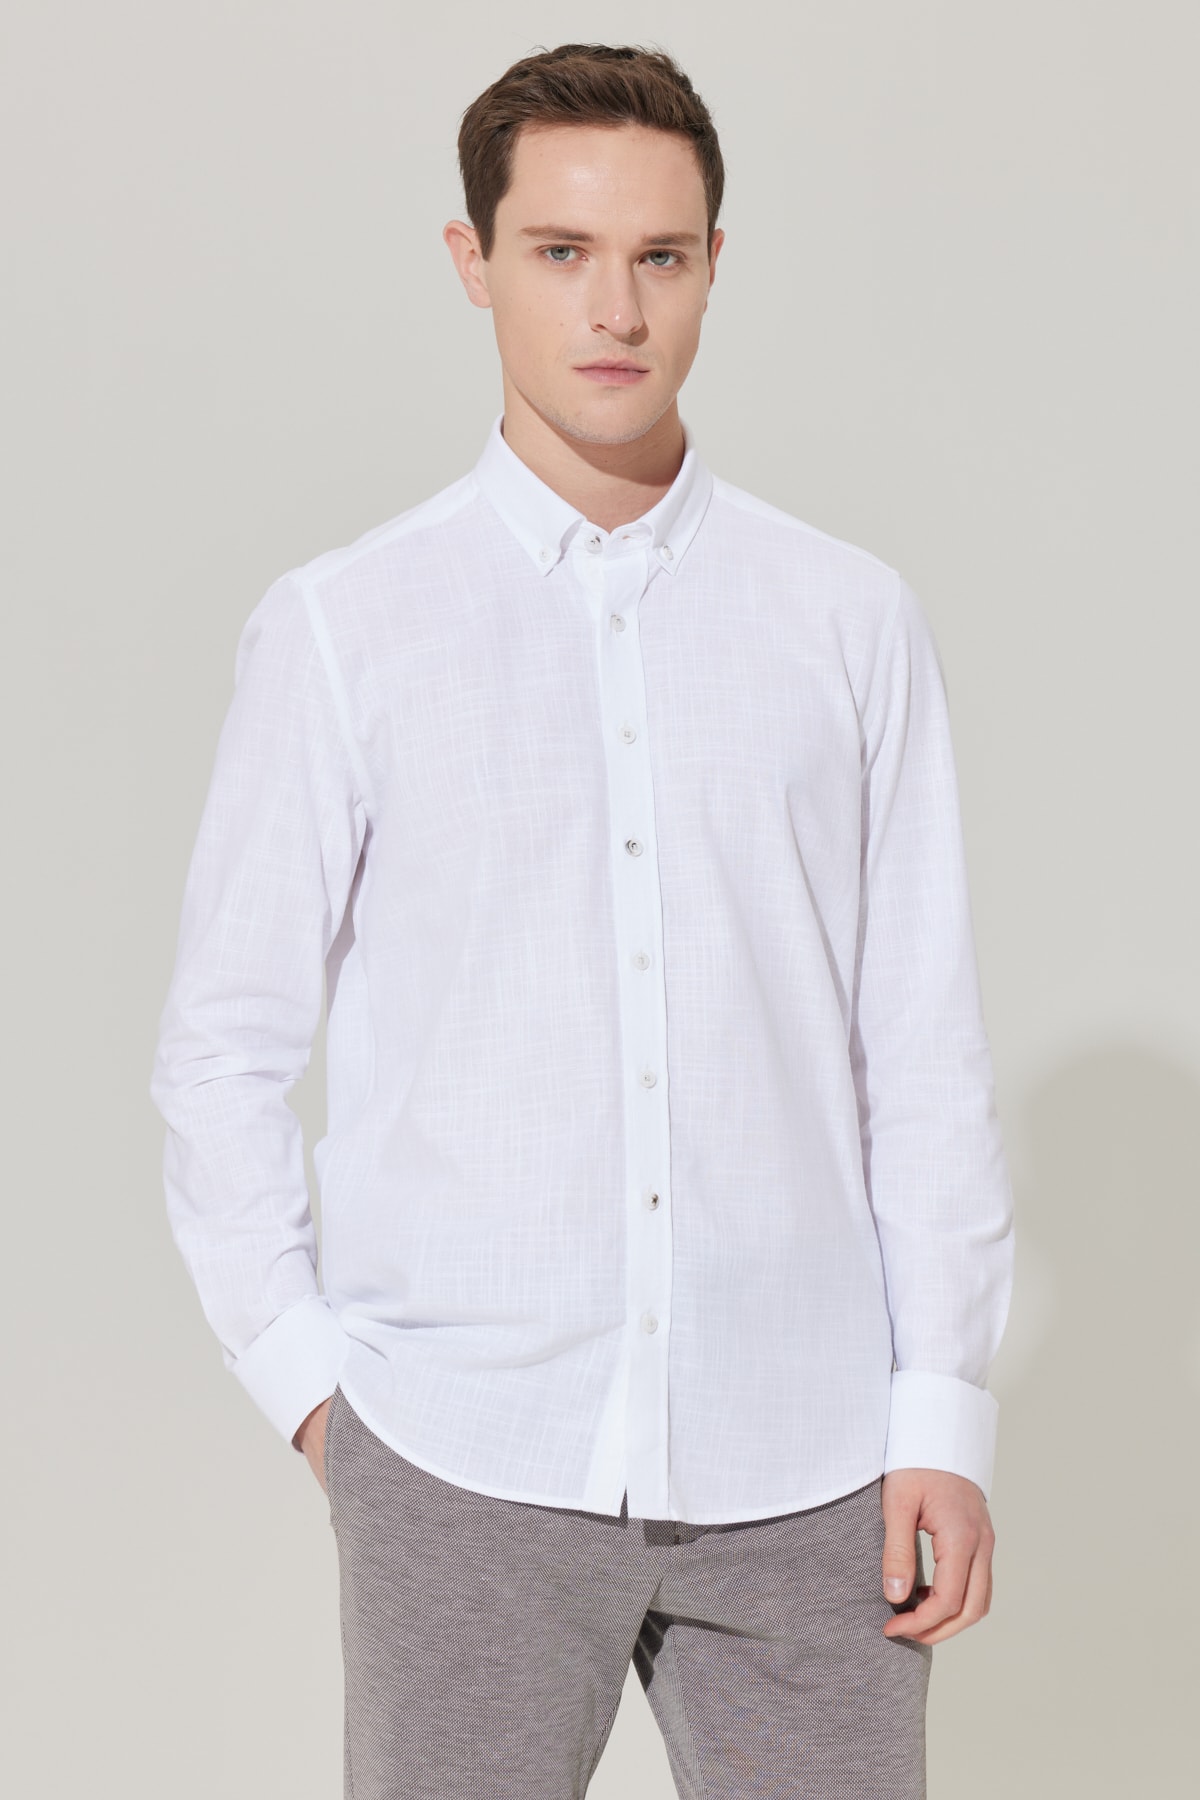 ALTINYILDIZ CLASSICS Men's White Slim Fit Slim Fit Buttoned Collar Linen Look 100% Cotton Flamed Shirt